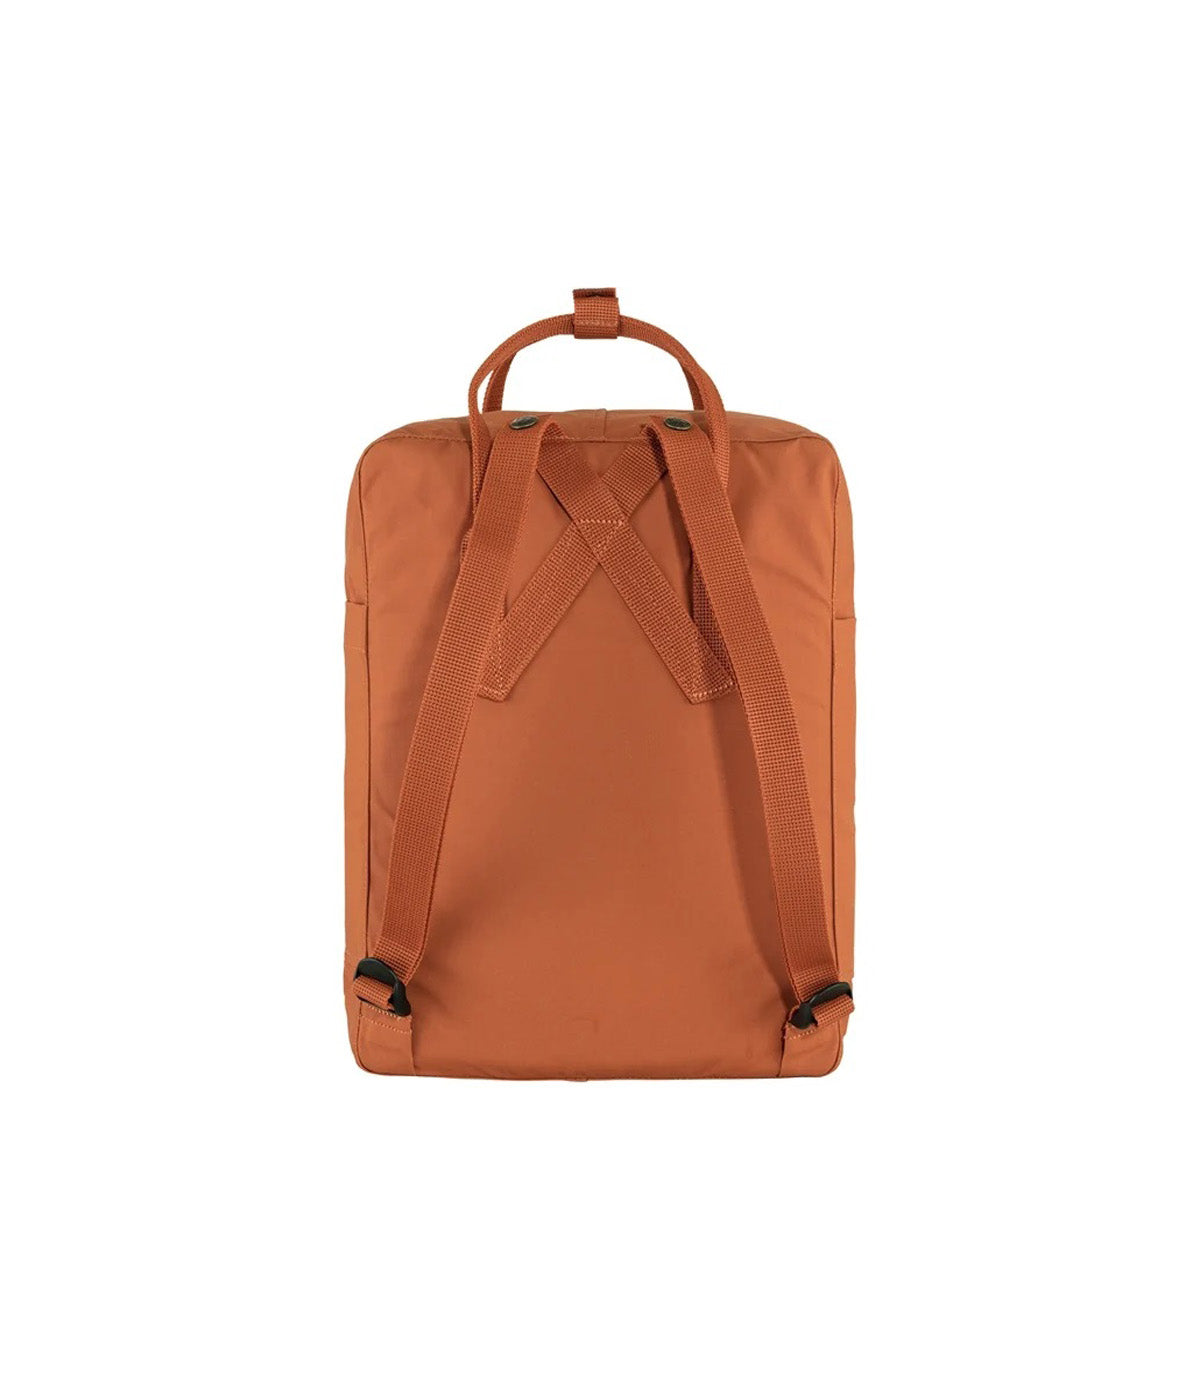 Fjallraven Kanken Original Orange Backpack